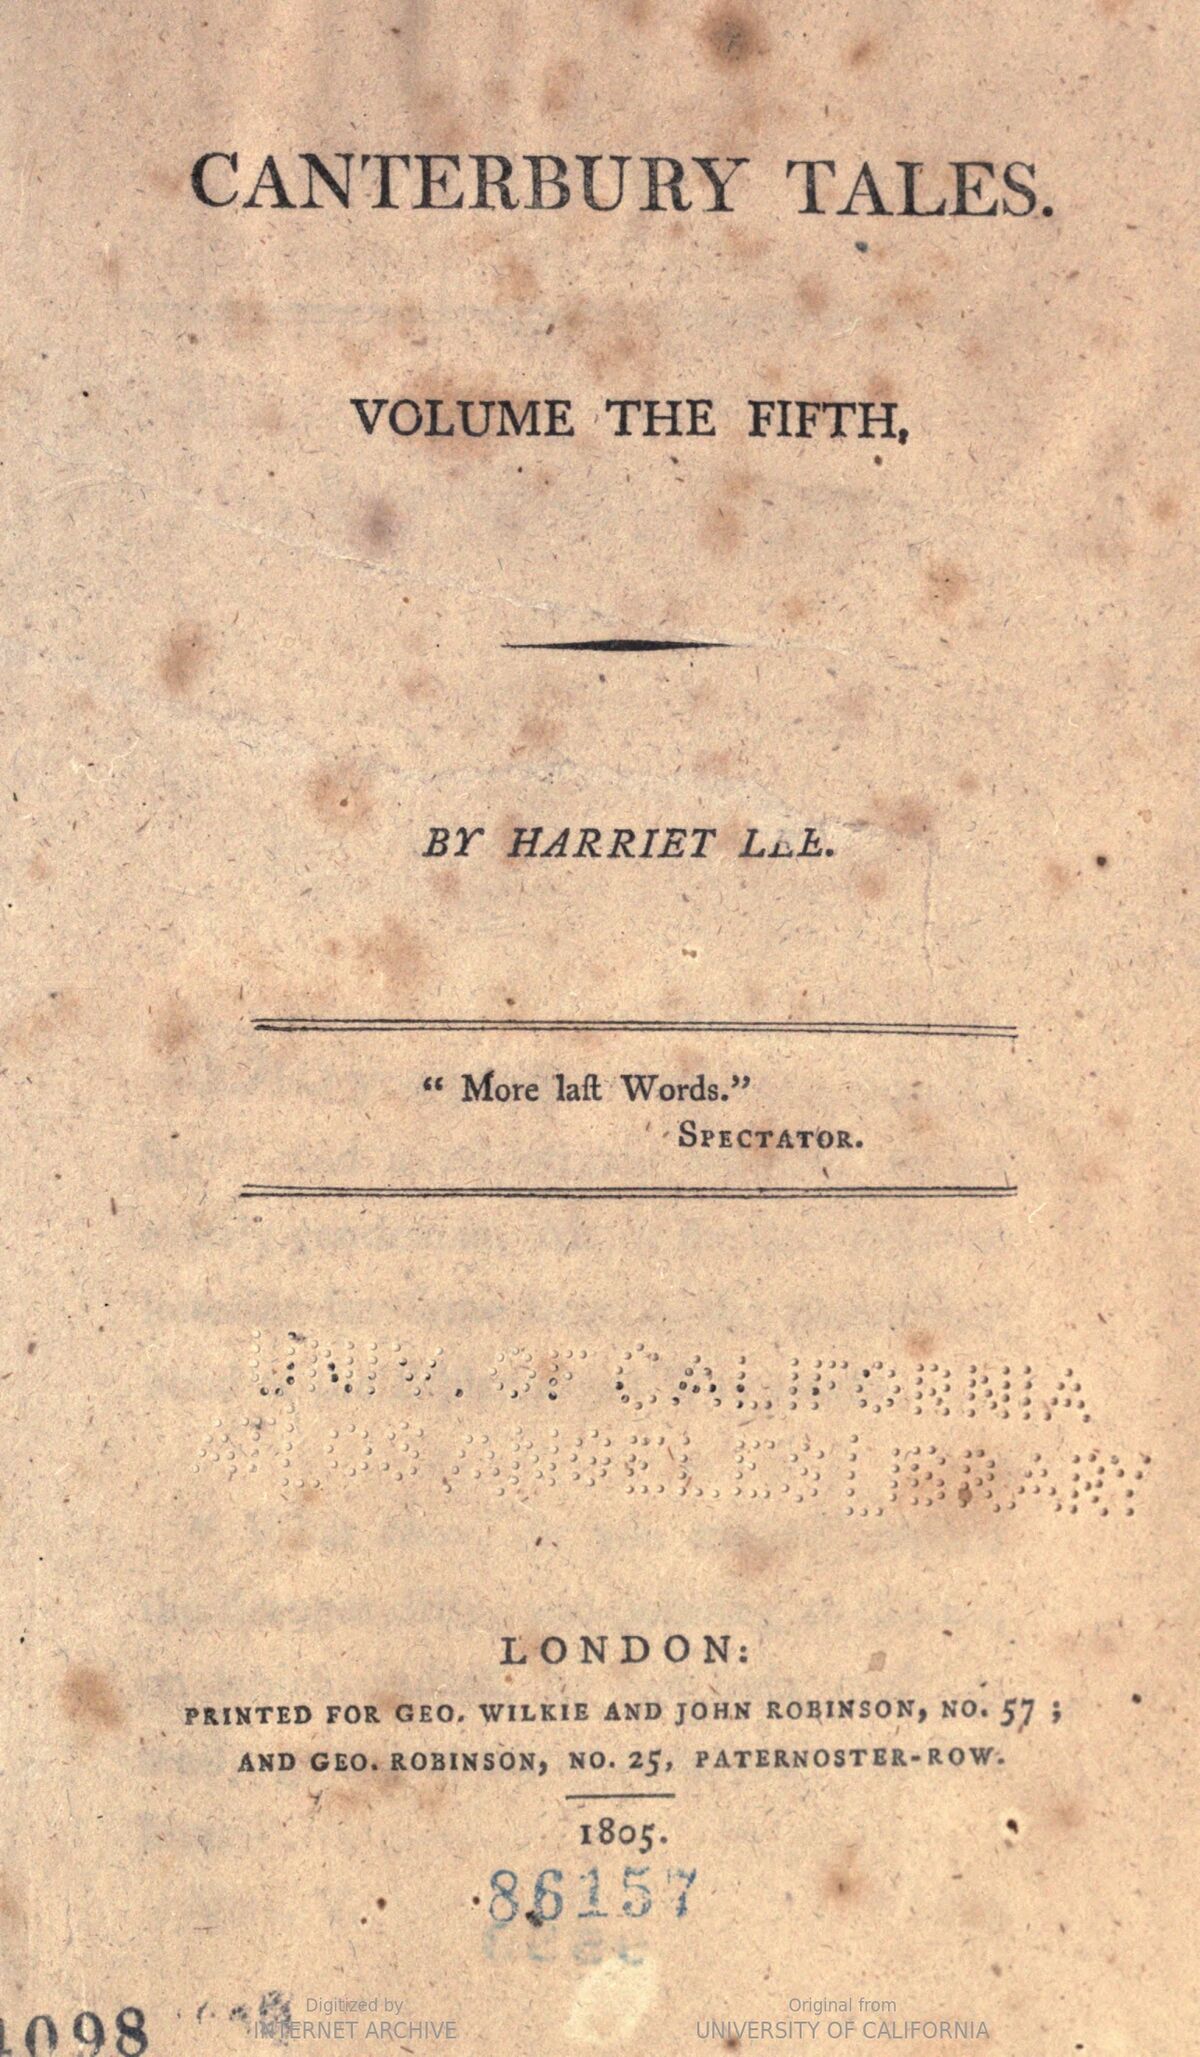 GFD 3/271: Titelblatt des fünften Bandes der «Canterbury Tales» von Harriet Lee, 1805